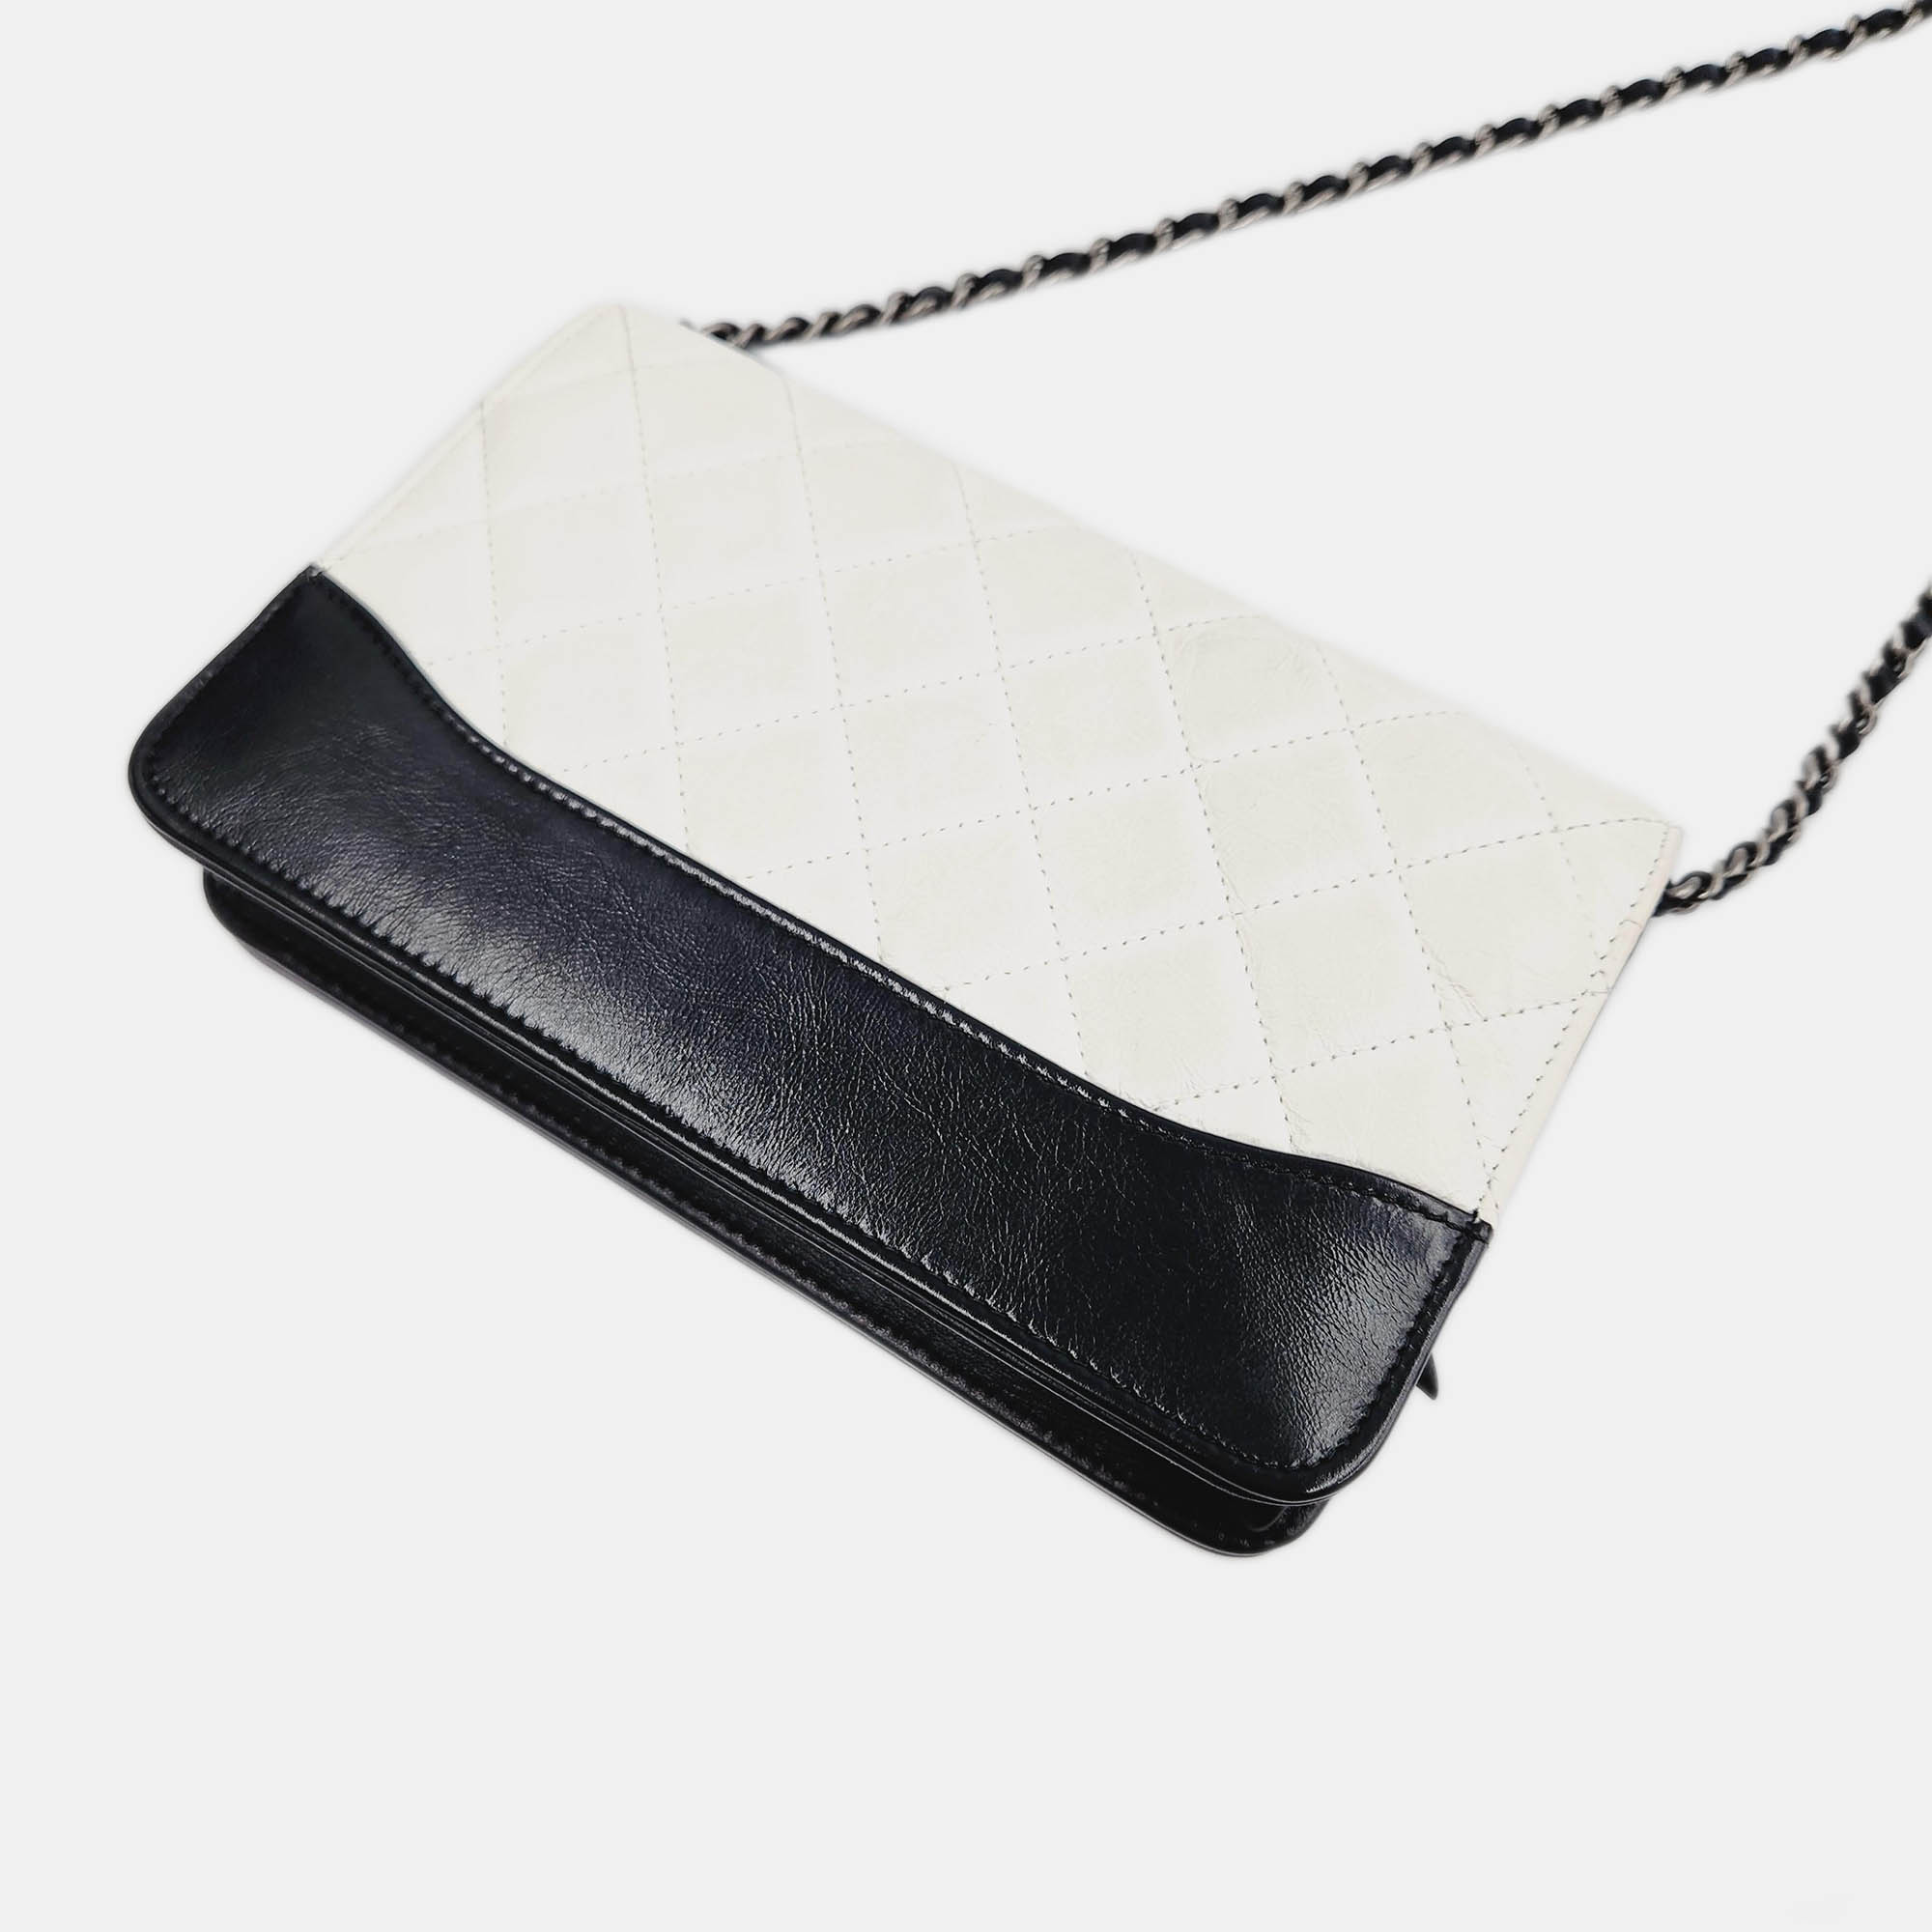 Chanel Gabriel WOC Mini Crossbody Bag